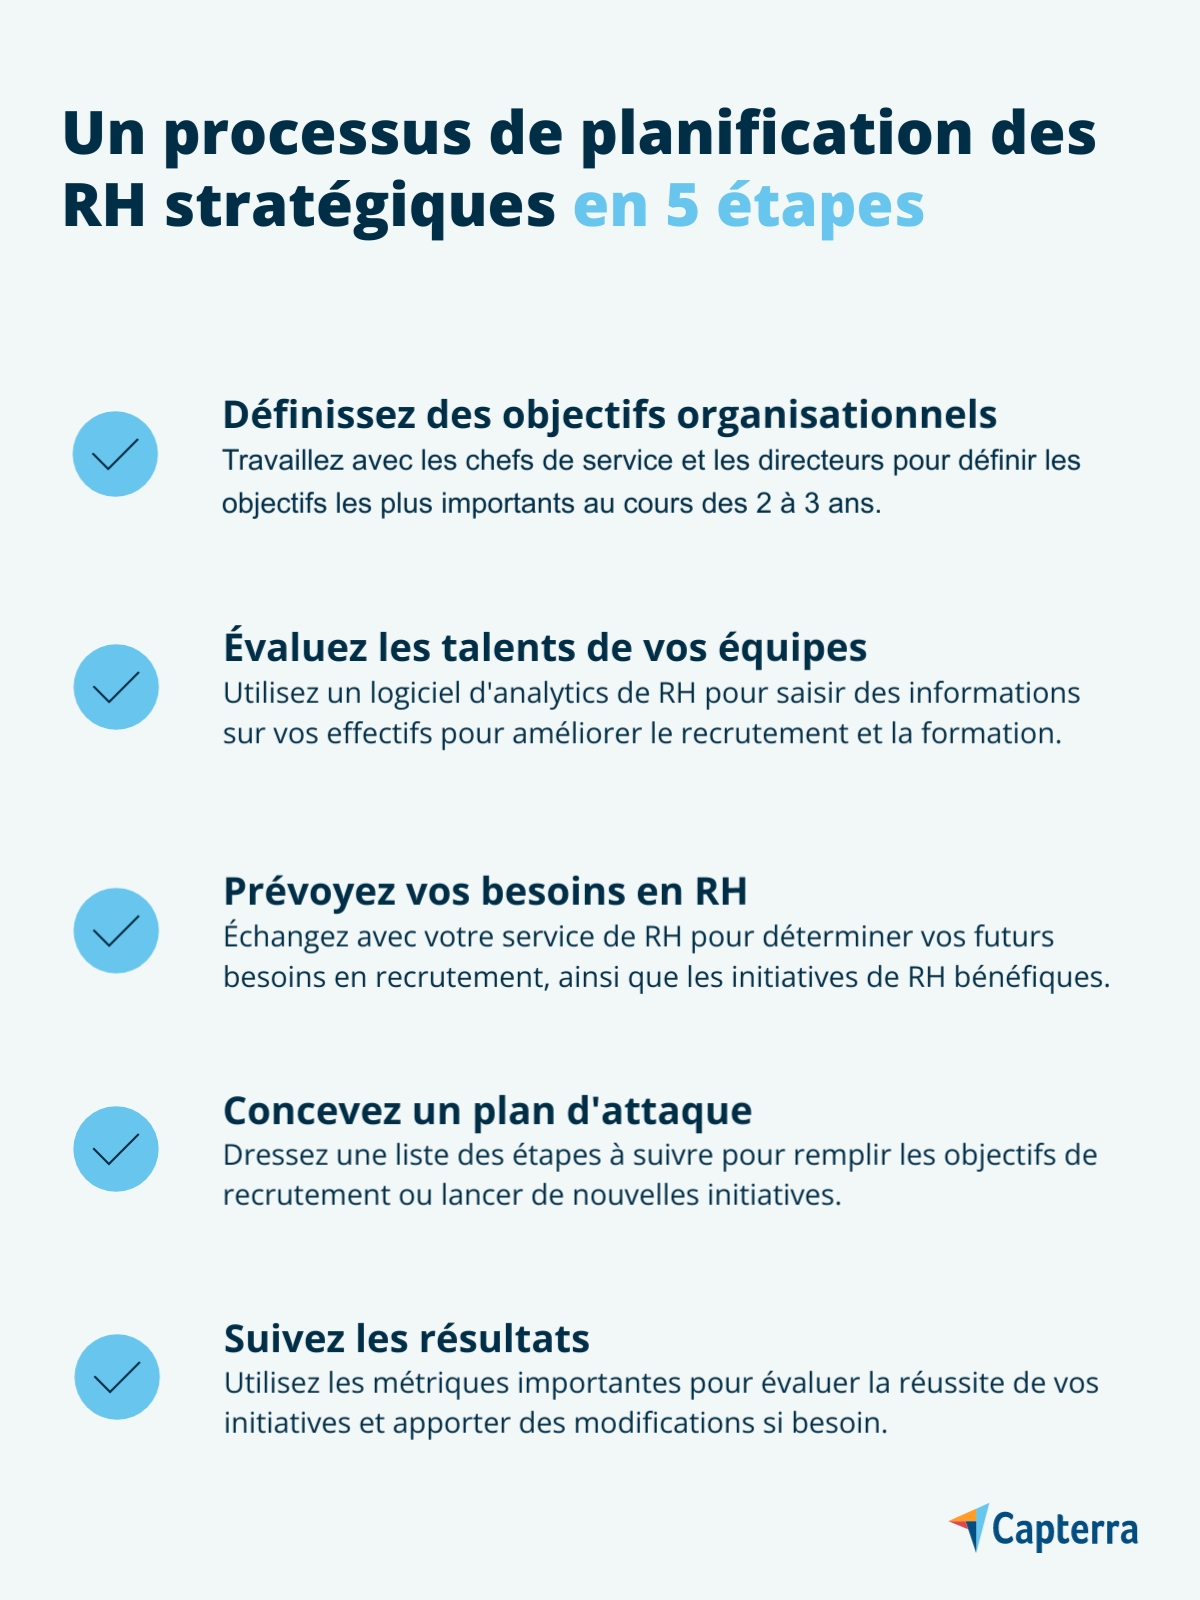 5 étapes des RH stratégiques